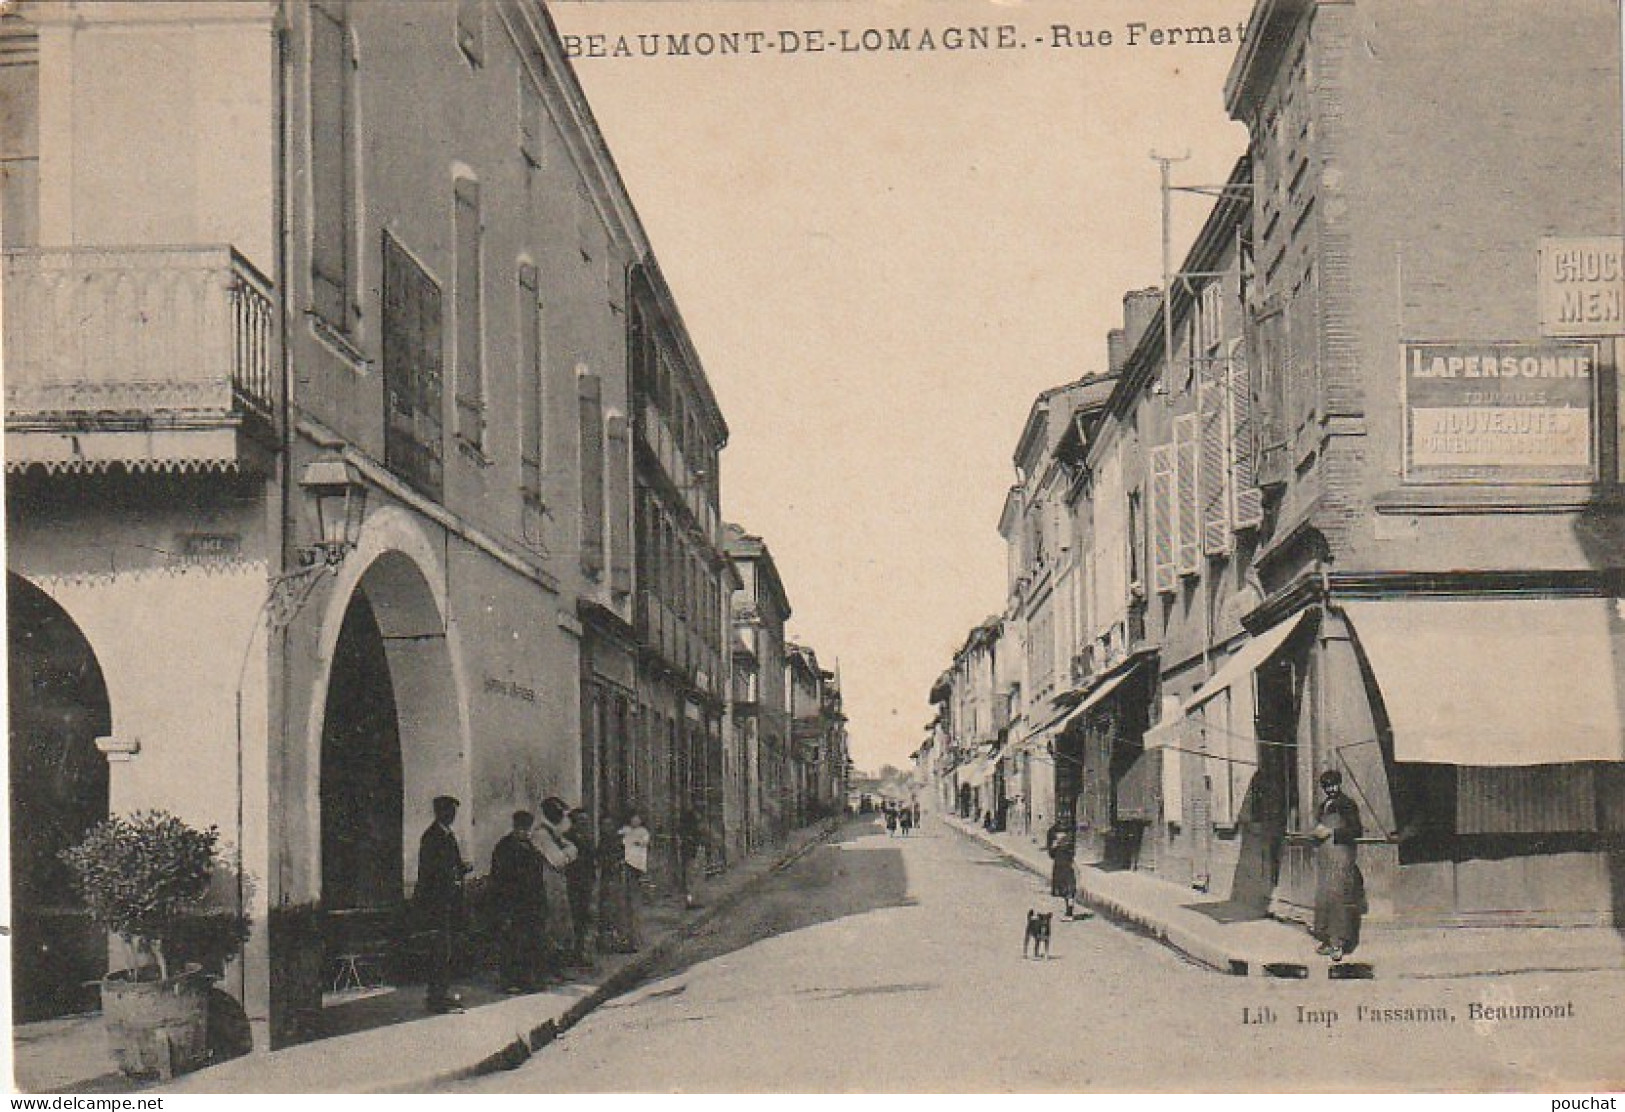 KO 17-(82) BEAUMONT DE LOMAGNE - RUE FERMAT - VILLAGEOIS - 2 SCANS  - Beaumont De Lomagne